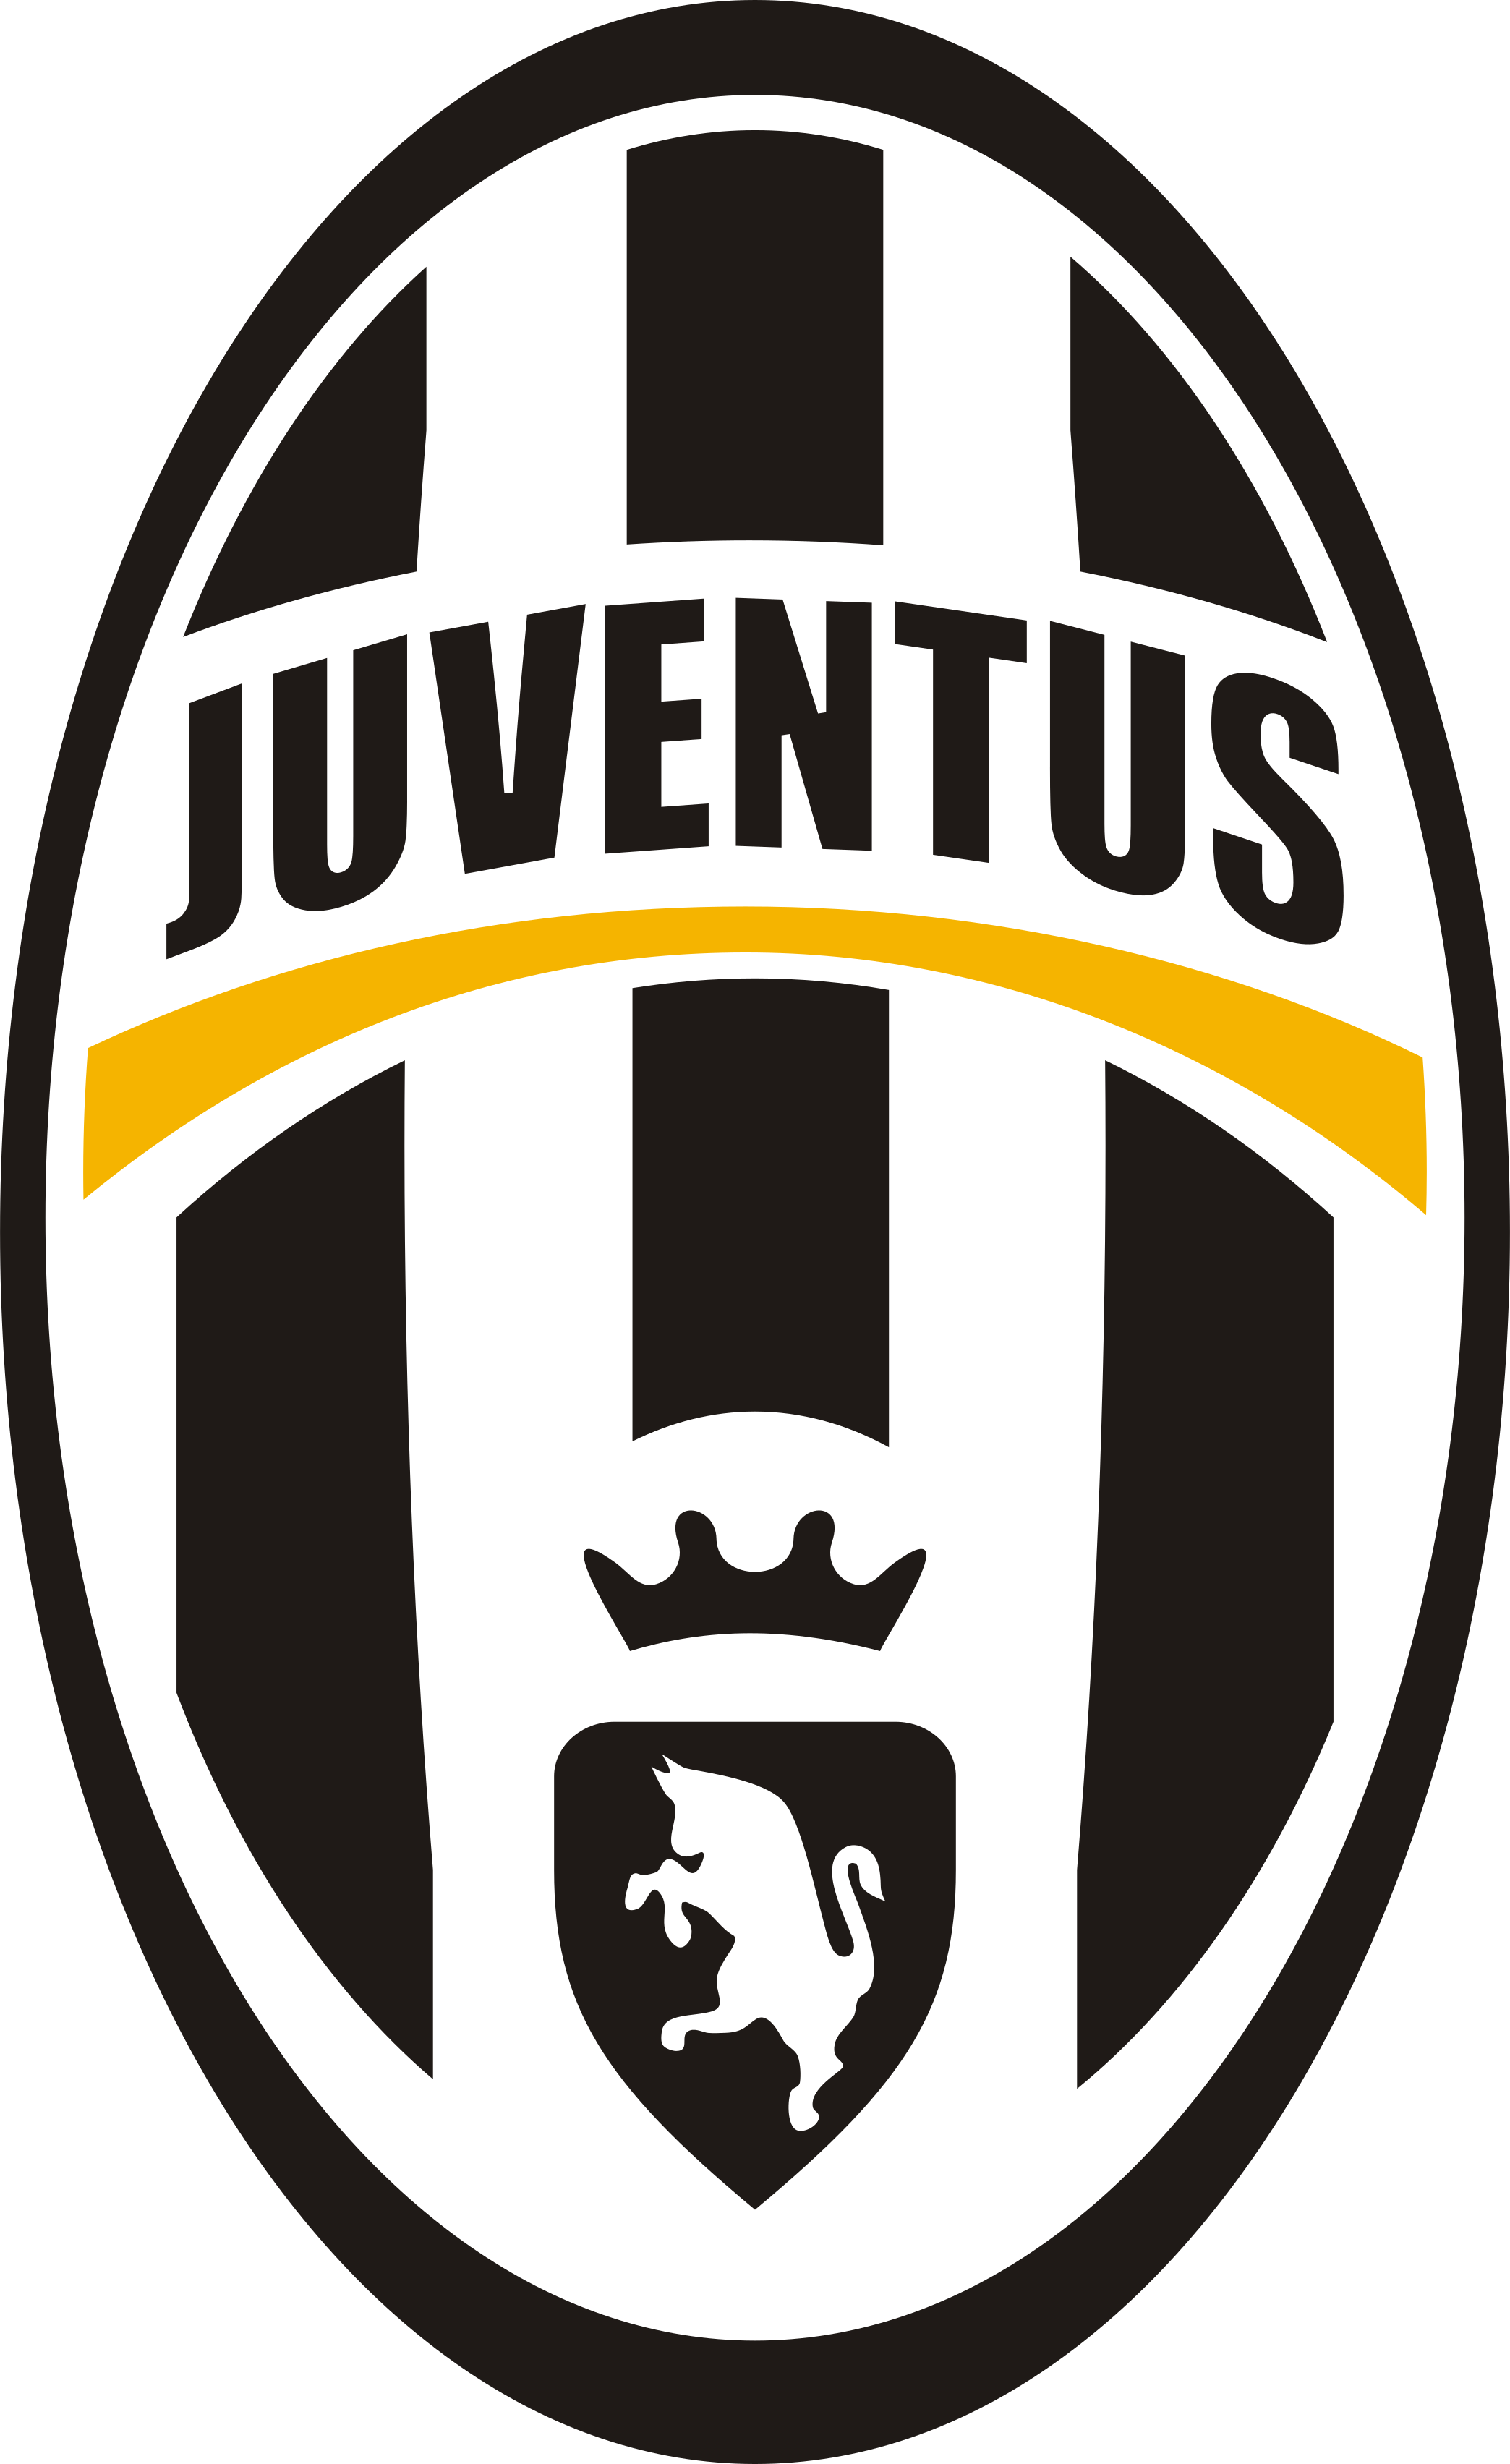 Palmarès della Juventus Football Club - Wikipedia